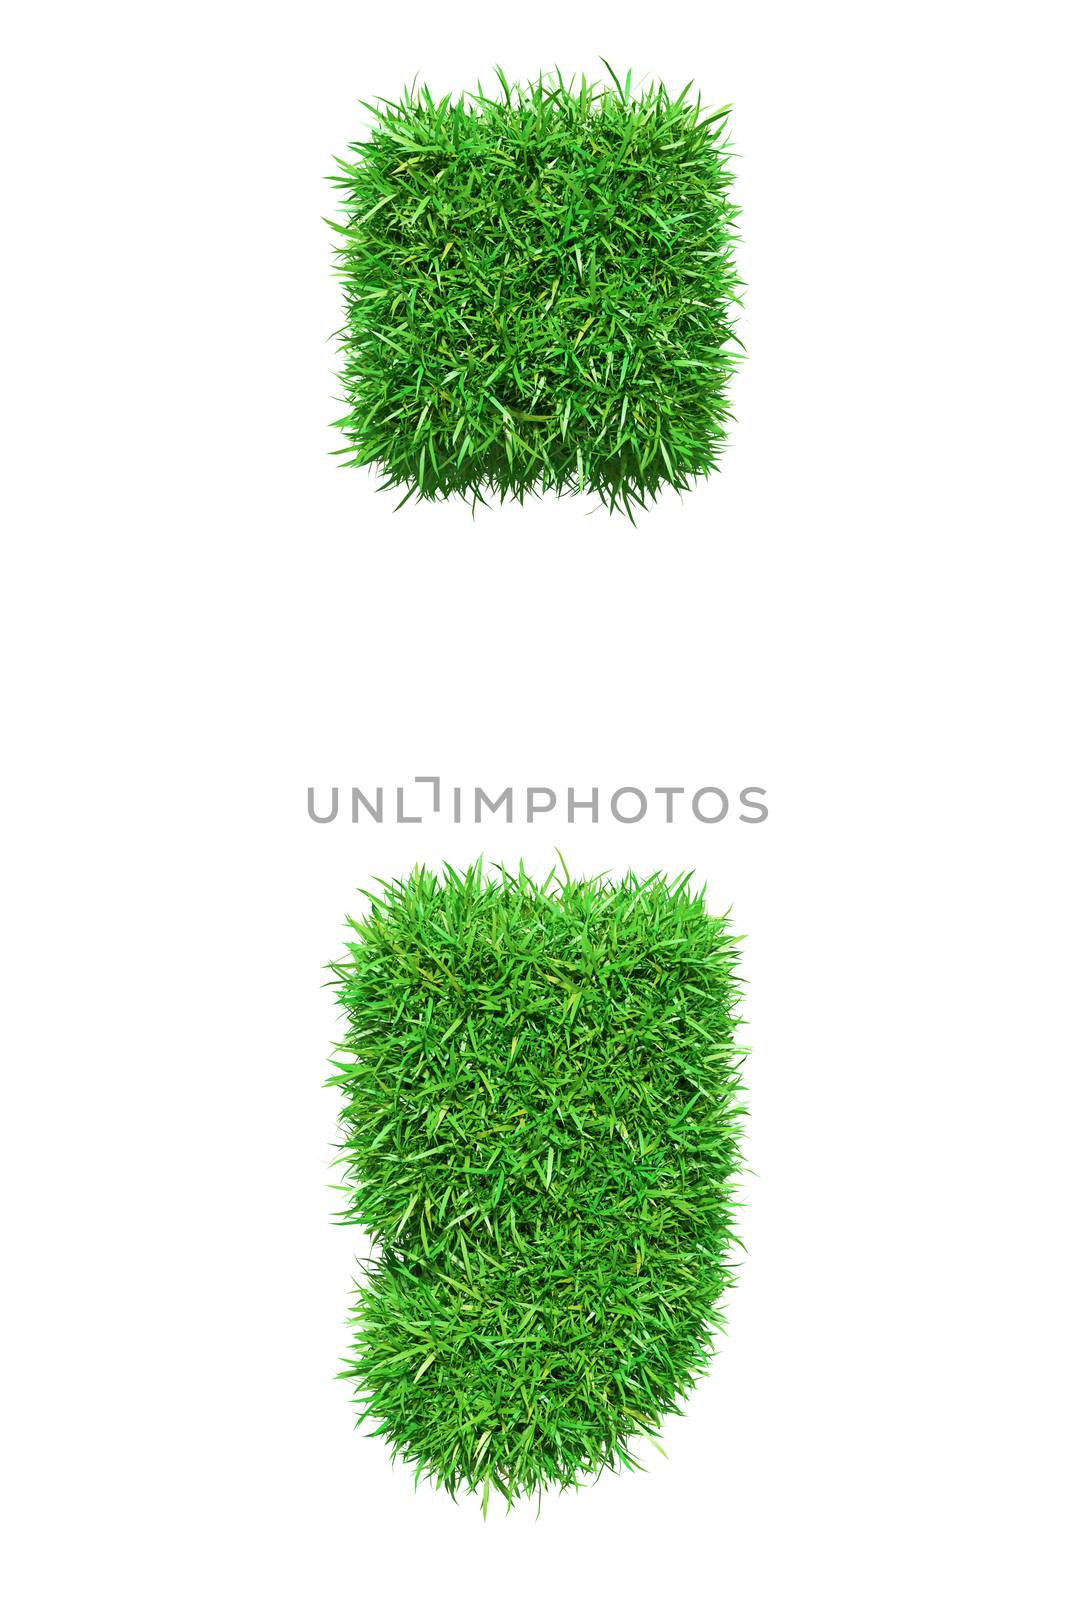 Green grass semicolon by cherezoff